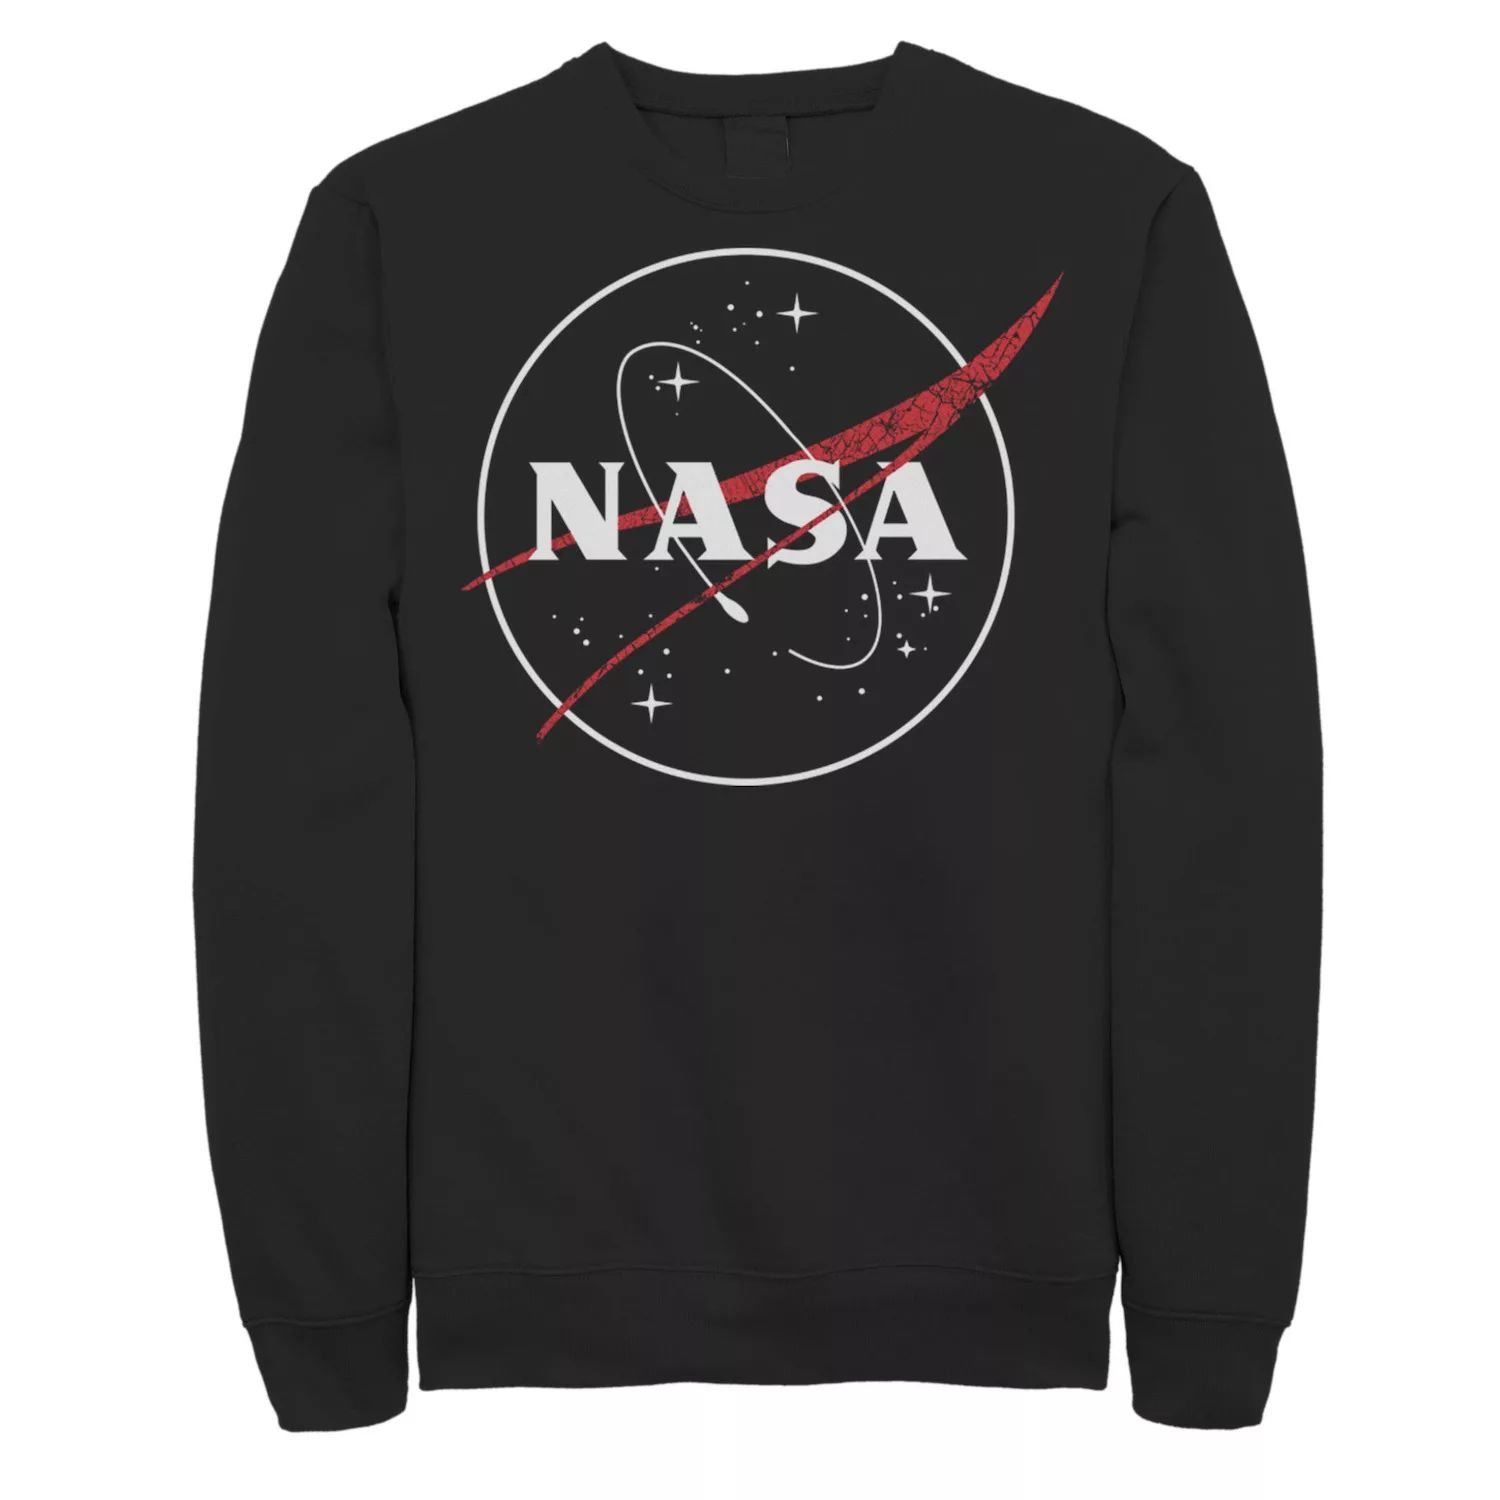 Мужской флисовый пуловер с полым круглым логотипом NASA Licensed Character